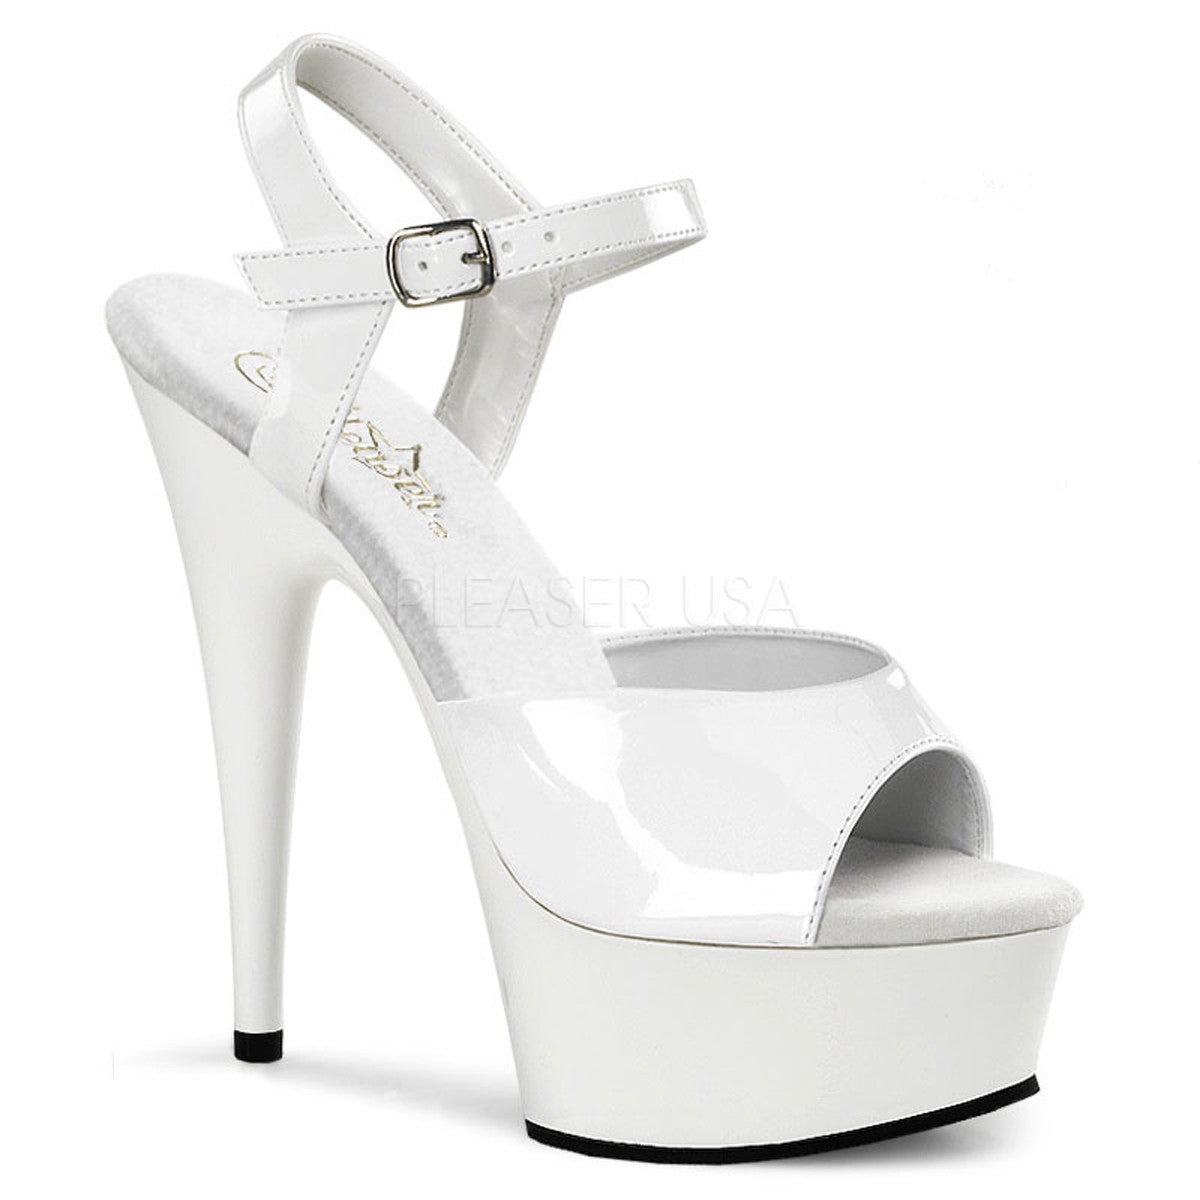 PLEASER DELIGHT-609 White Ankle Strap Sandals - Shoecup.com